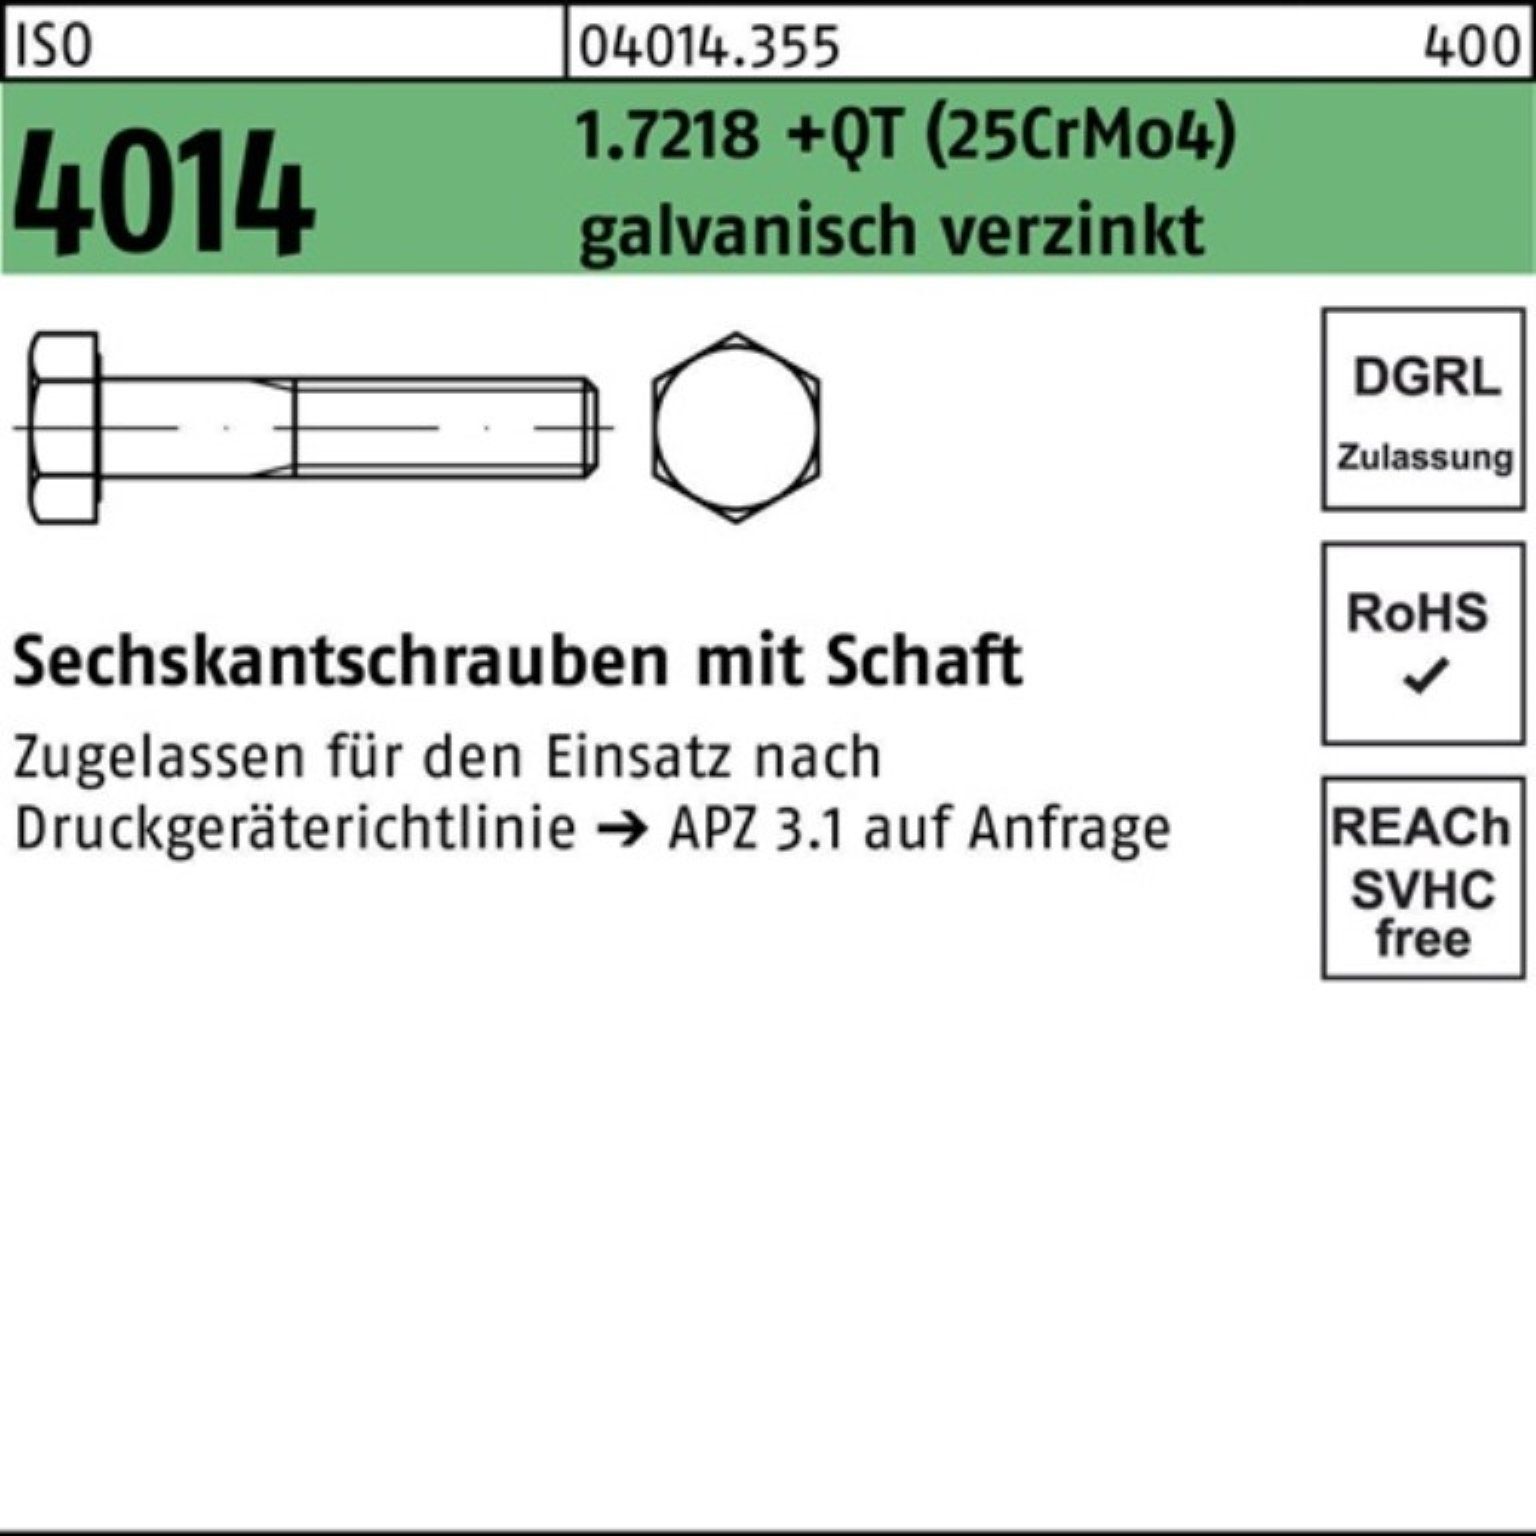 Bufab Sechskantschraube 100er 4014 1.7218 Pack M36x160 +QT (25CrM Schaft Sechskantschraube ISO